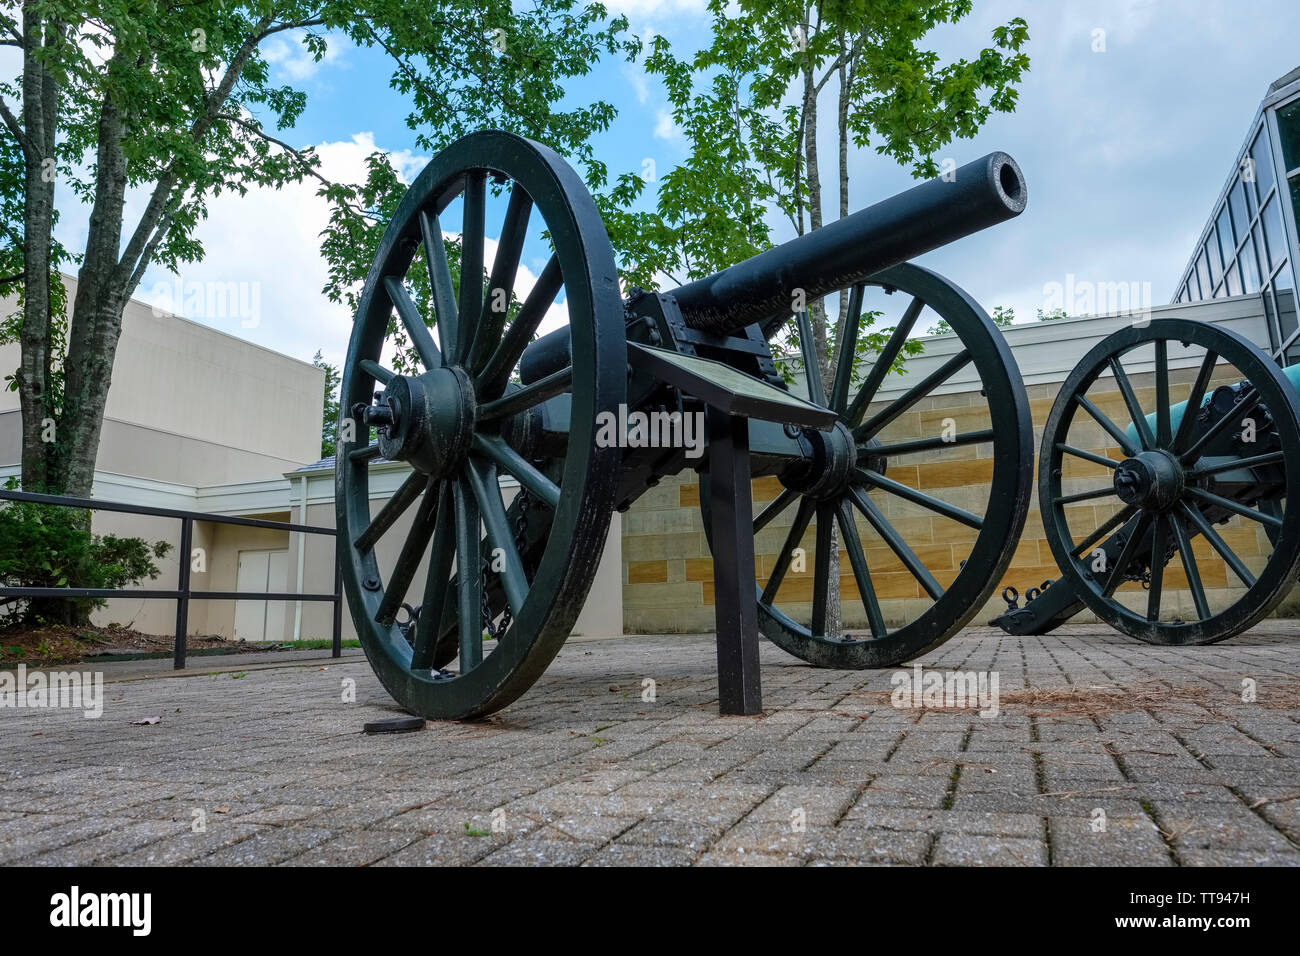 Noi la guerra civile cannon visualizzati al centro visitatori per Chickamauga & Chattanooga noi campi di battaglia della Guerra Civile parco militare Foto Stock